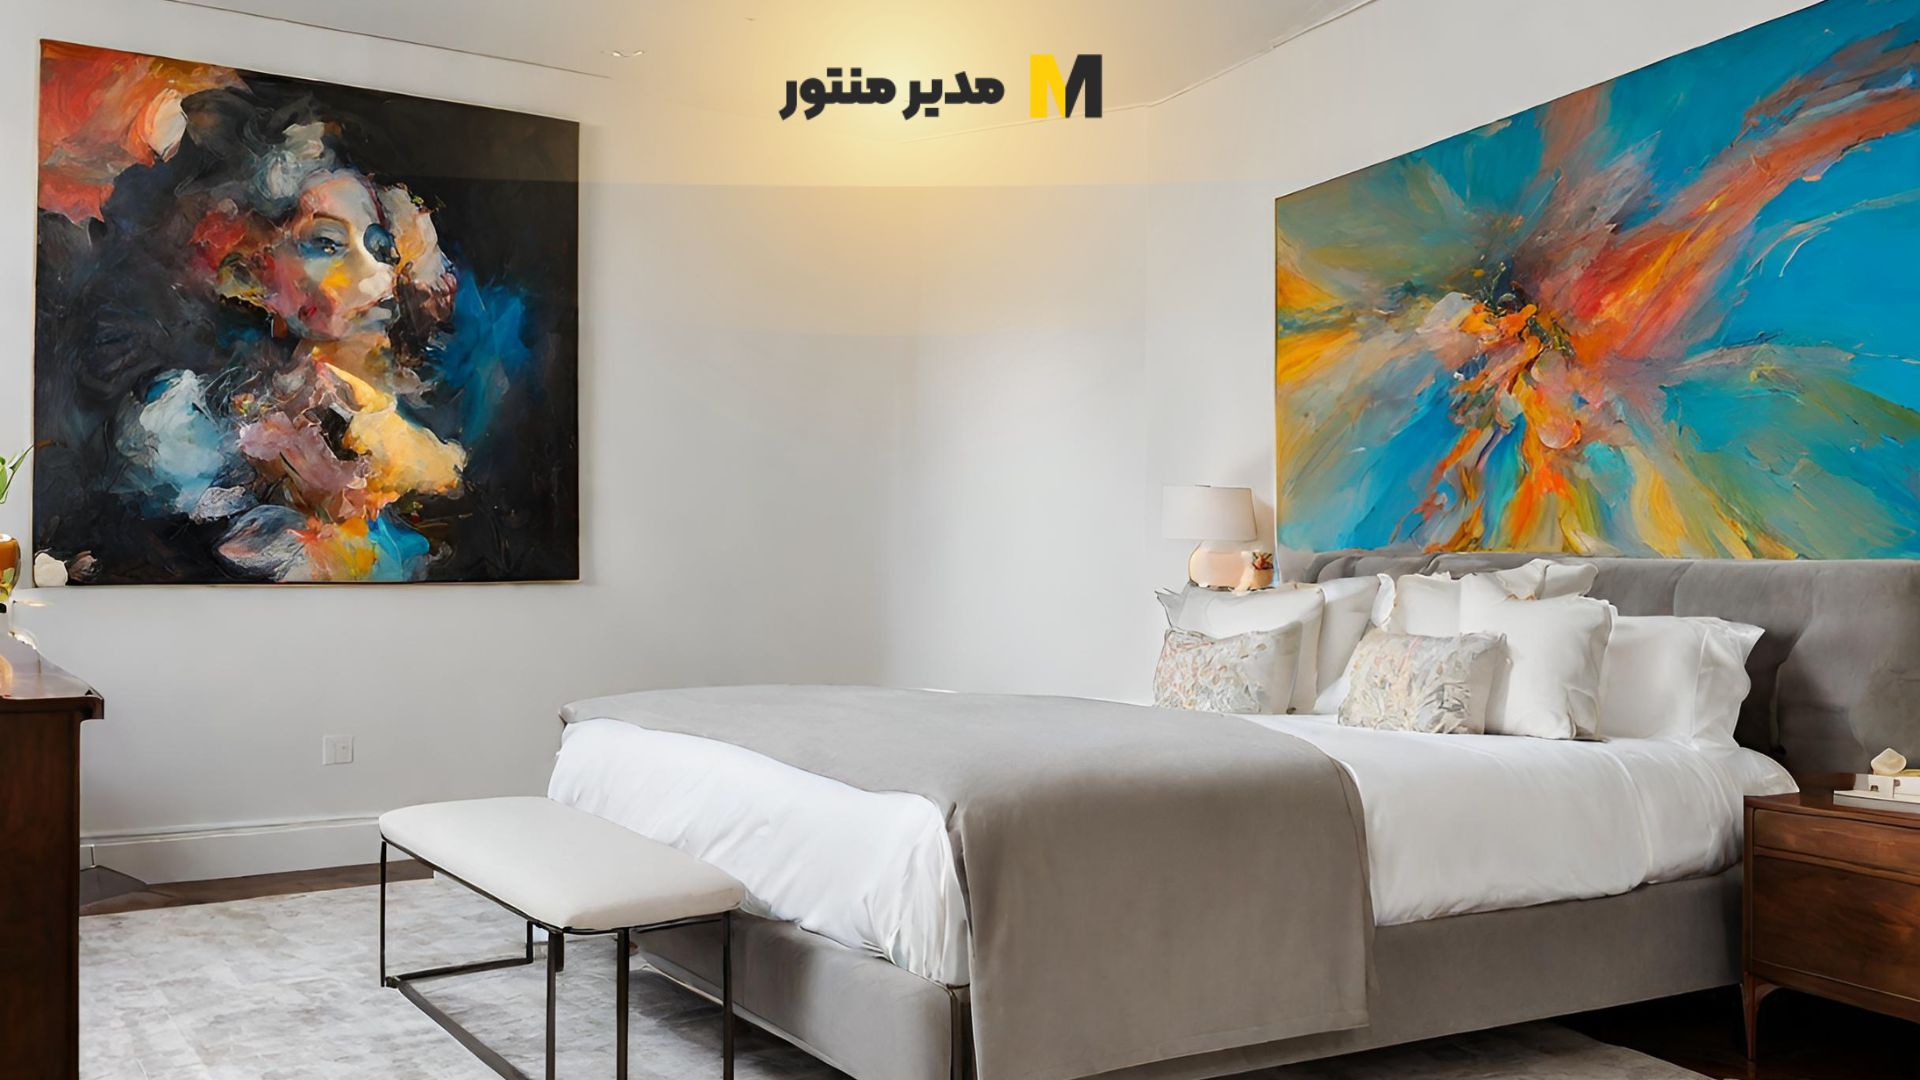 فرصت استثنائی خرید تابلو نقاشی مخصوص اتاق خواب با تخفیف ویژه